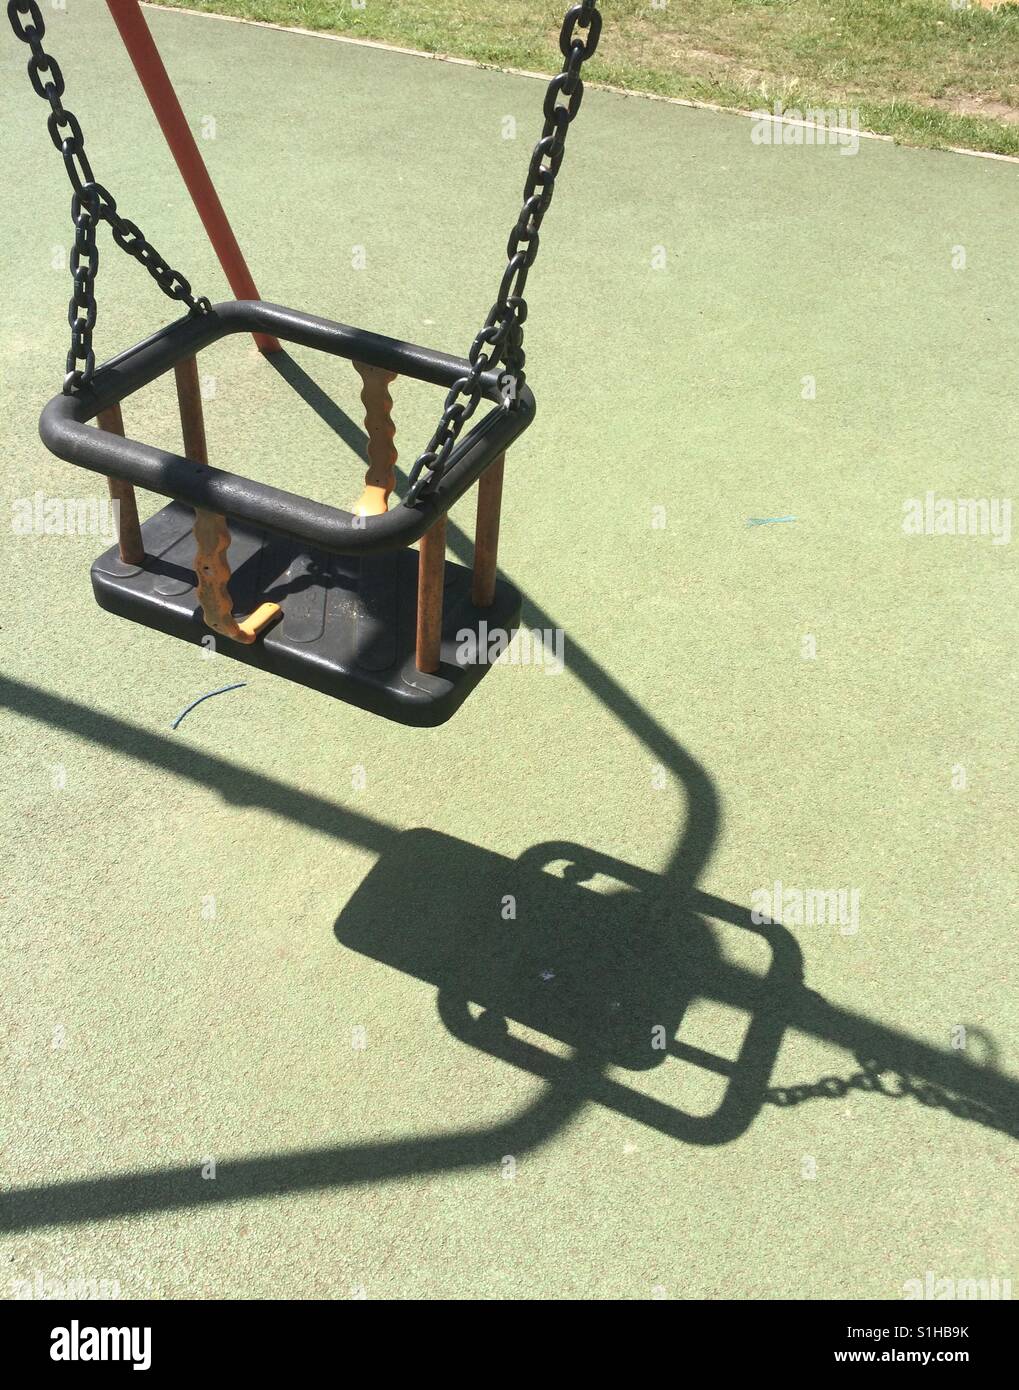 Swing in playground Stock Photo